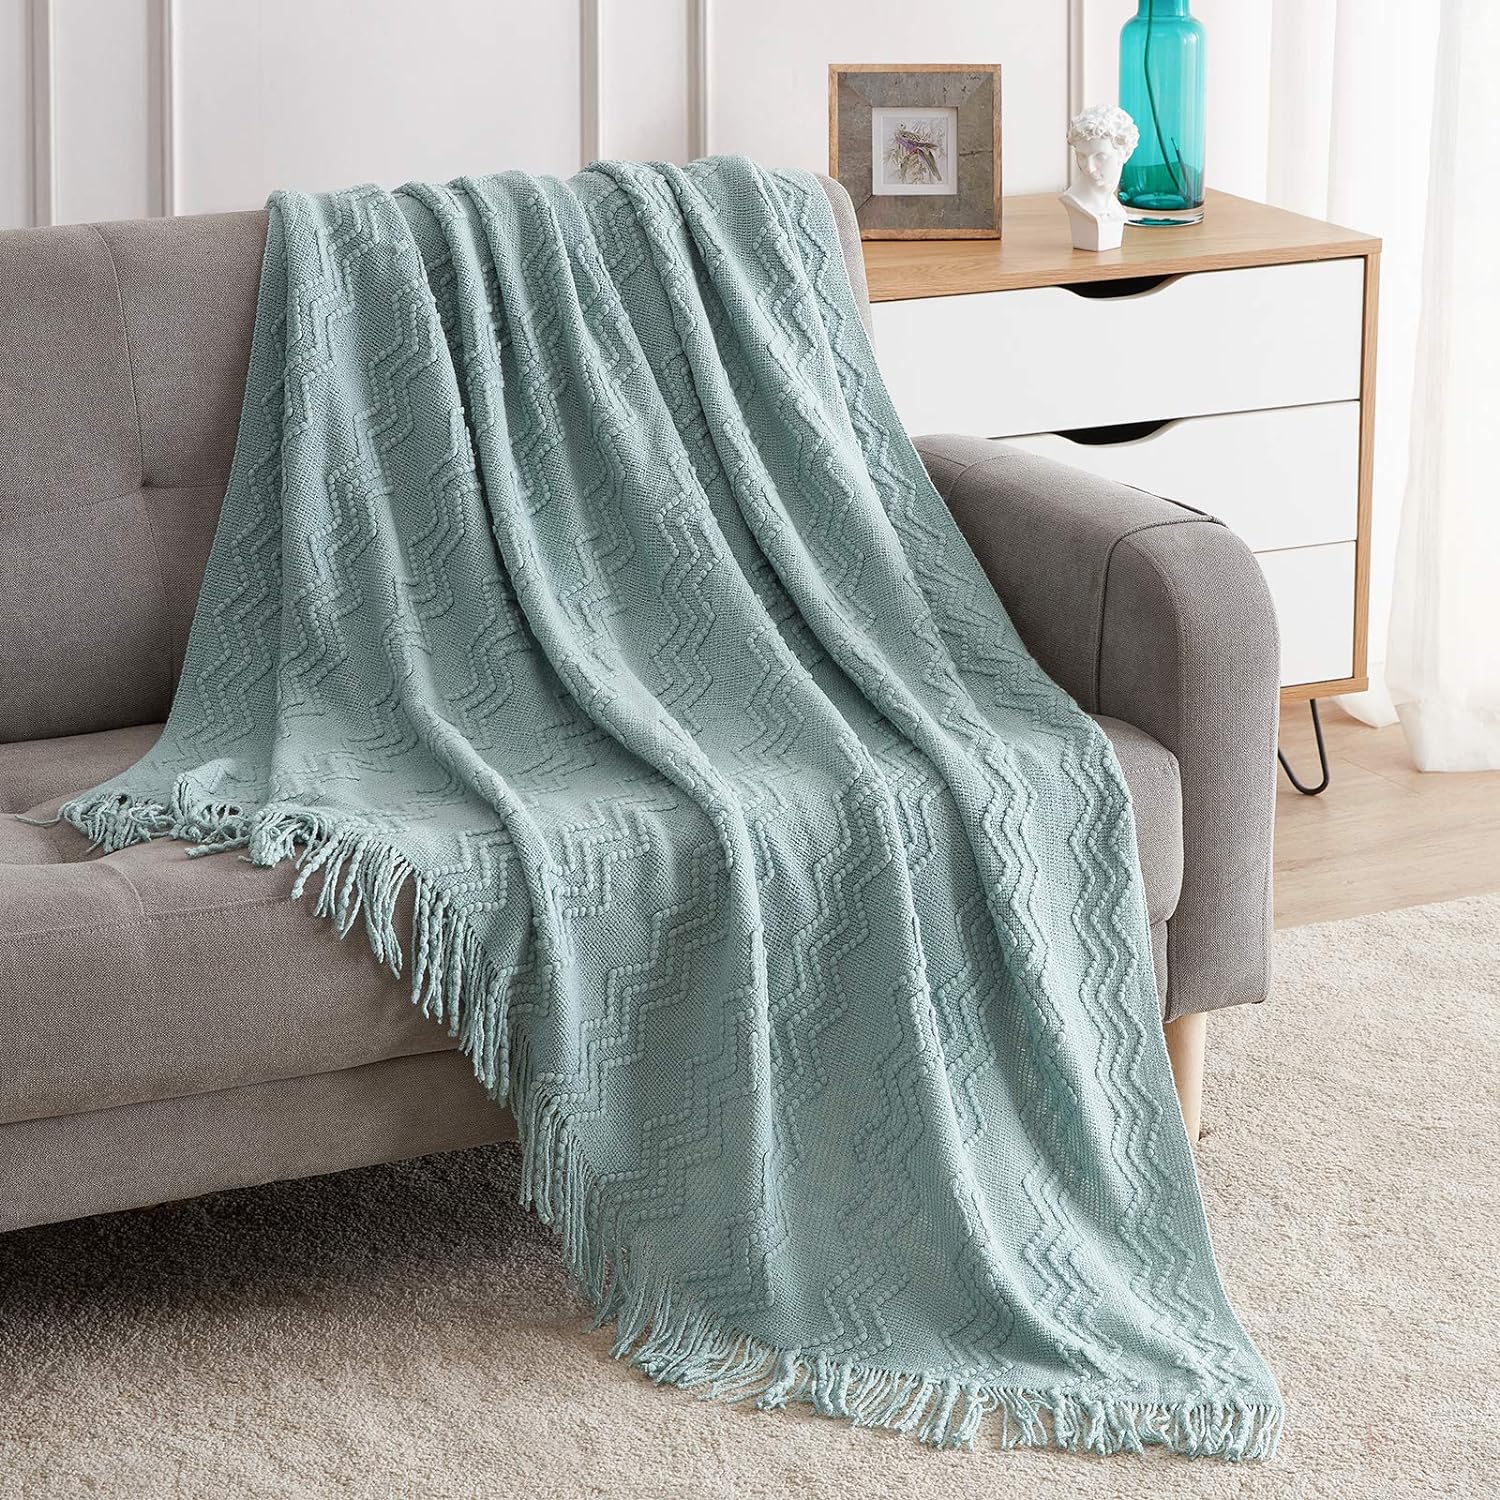  Bedsure Mantas para sofá, manta tejida de punto suave, 50 x 60  pulgadas, manta decorativa ligera de granja con borlas para cama, sofá,  adecuada para adultos y niños (gris) : Hogar